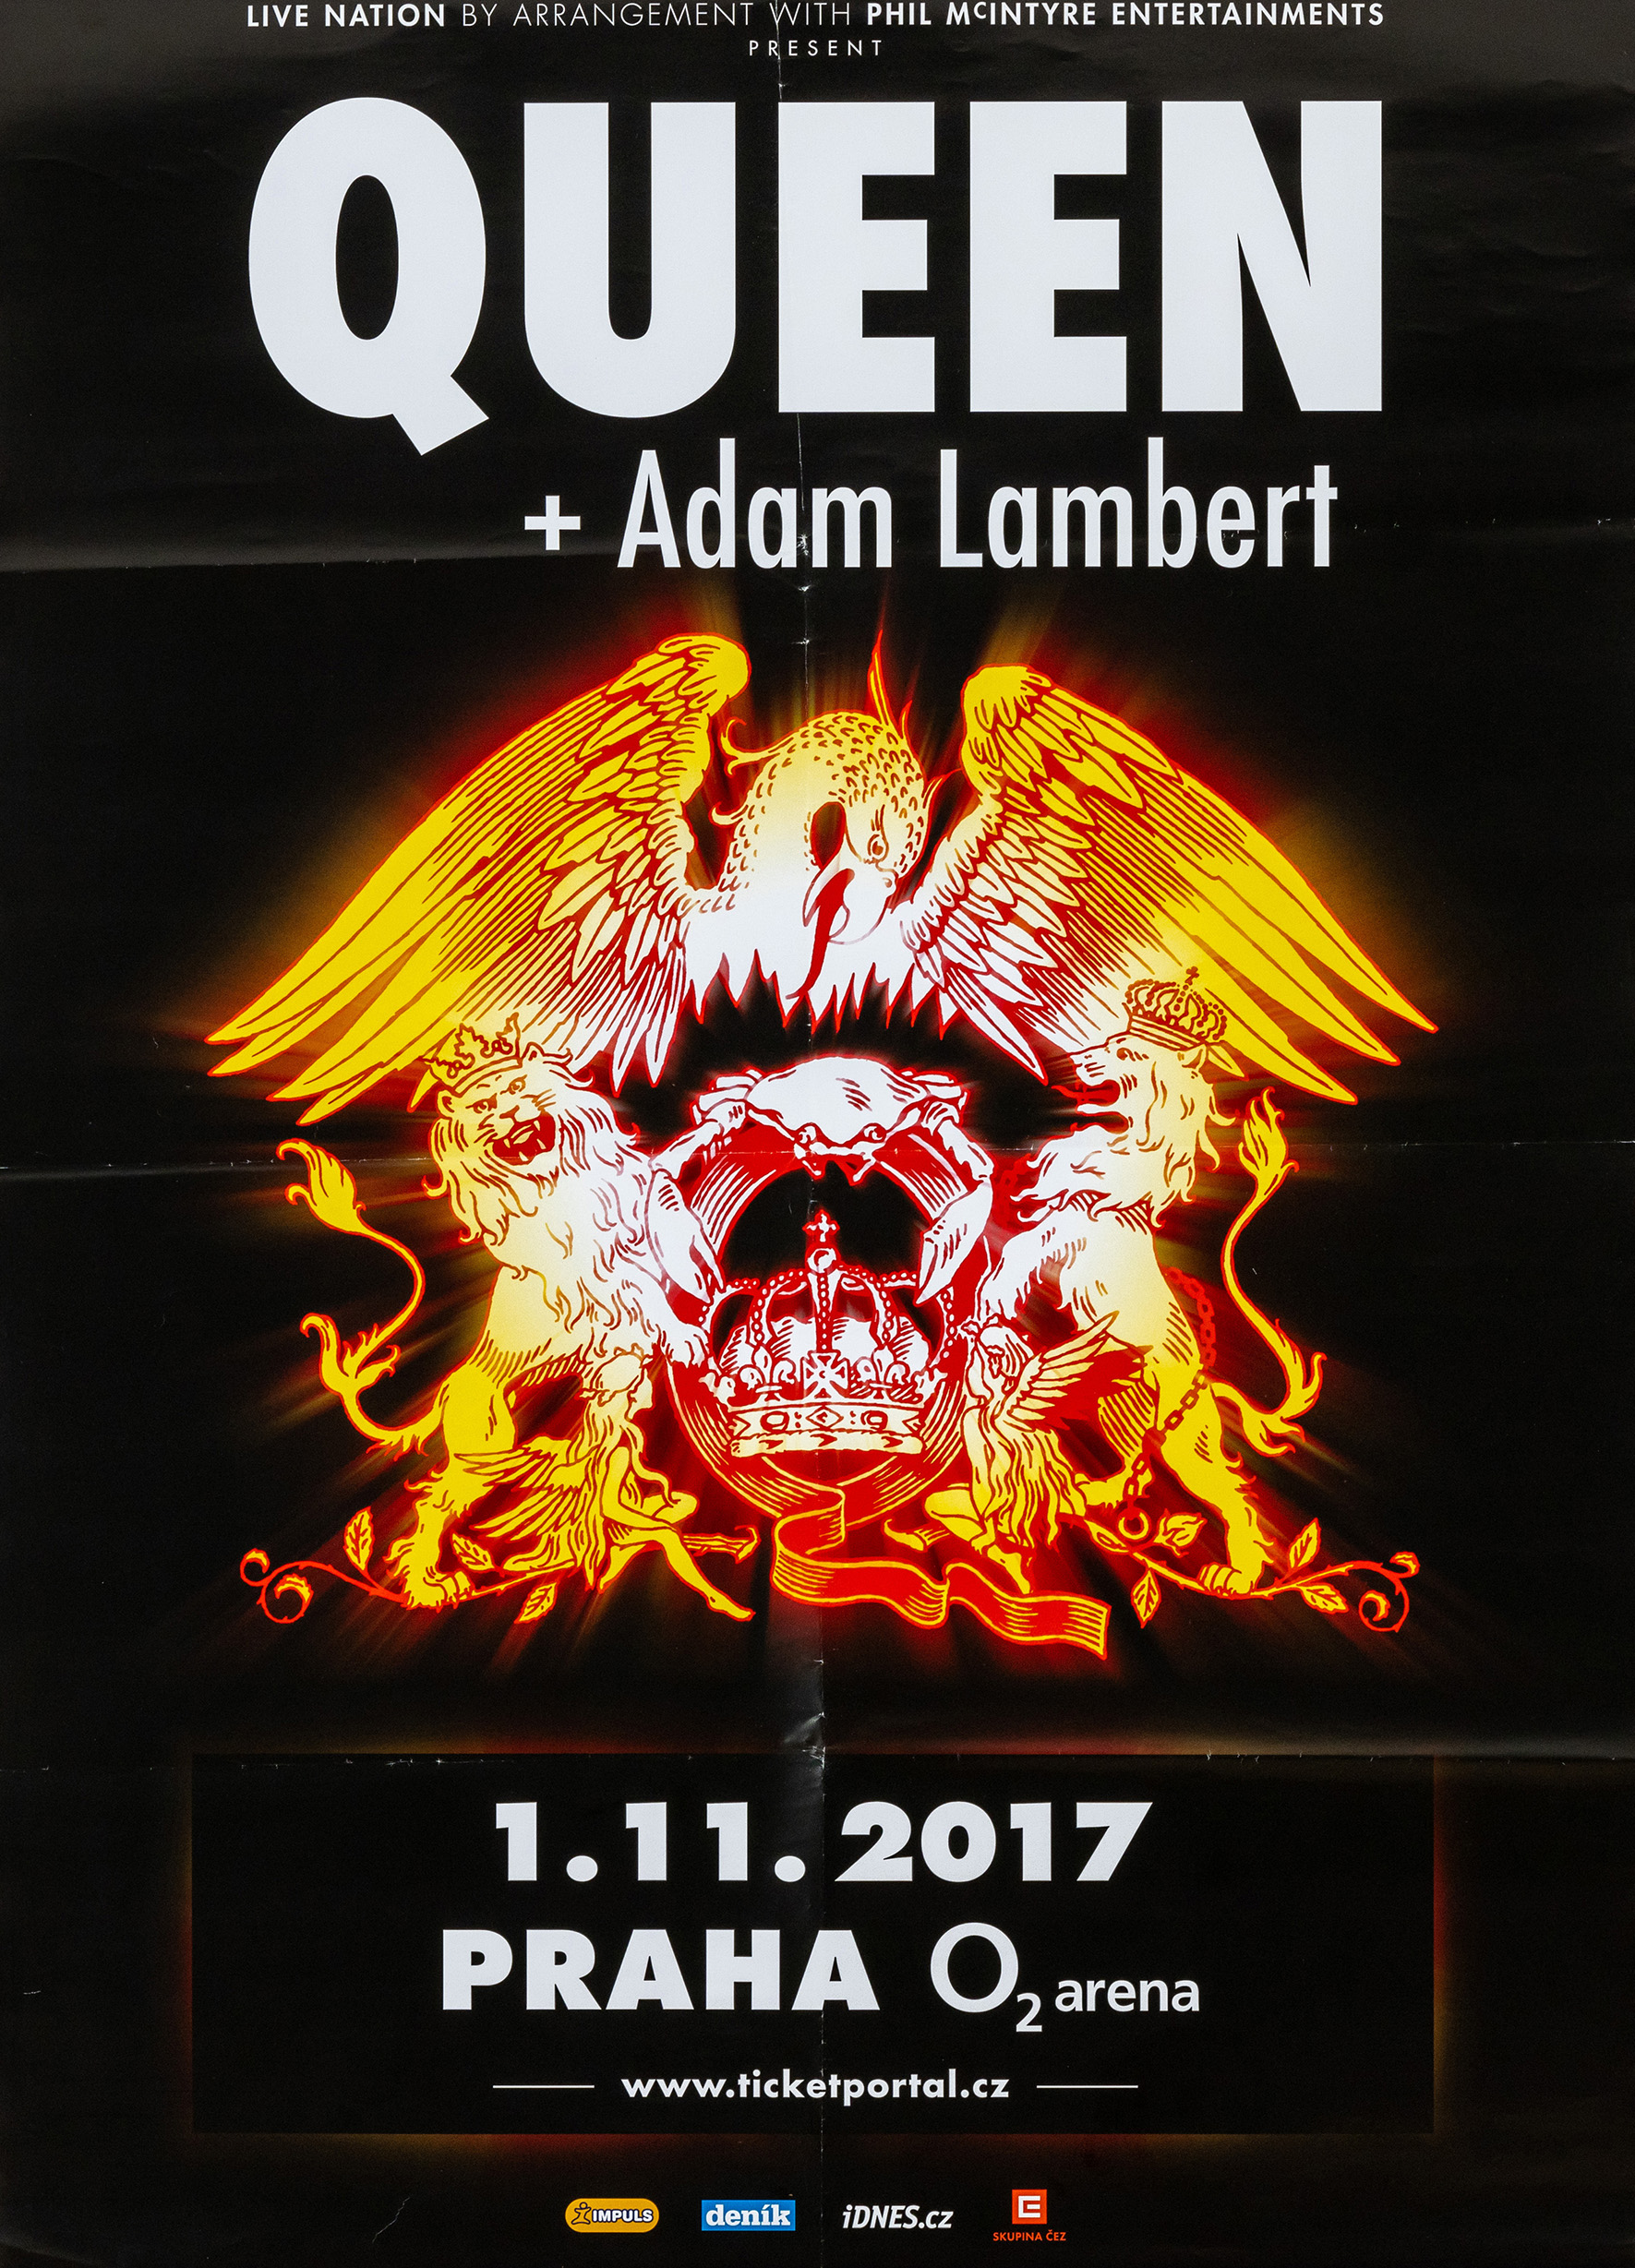 Queen + Adam Lambert in Prague on 01.11.2017